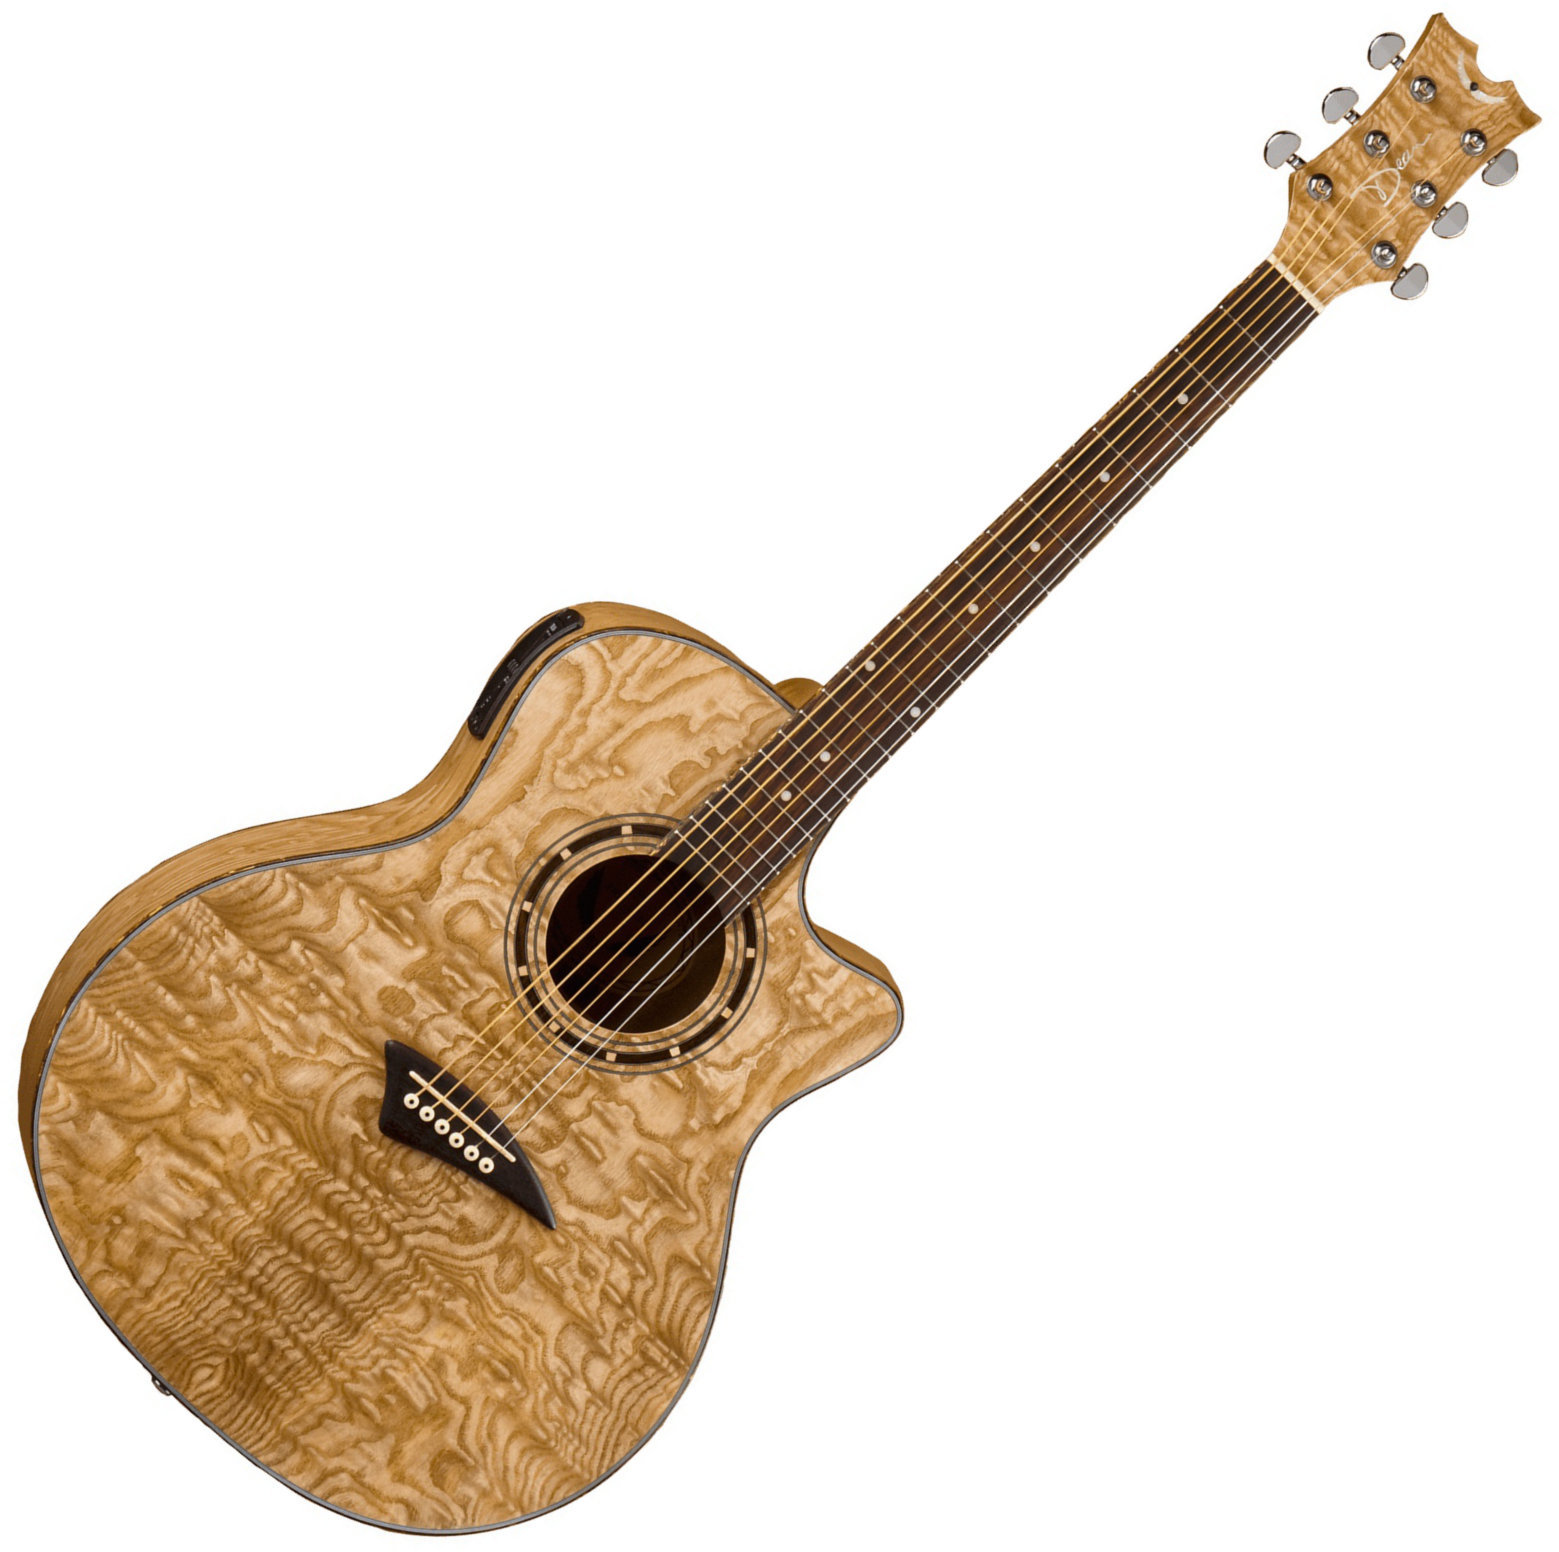 Ηλεκτροακουστική Κιθάρα Jumbo Dean Guitars Exotica Quilt Ash A/E Gloss Natural